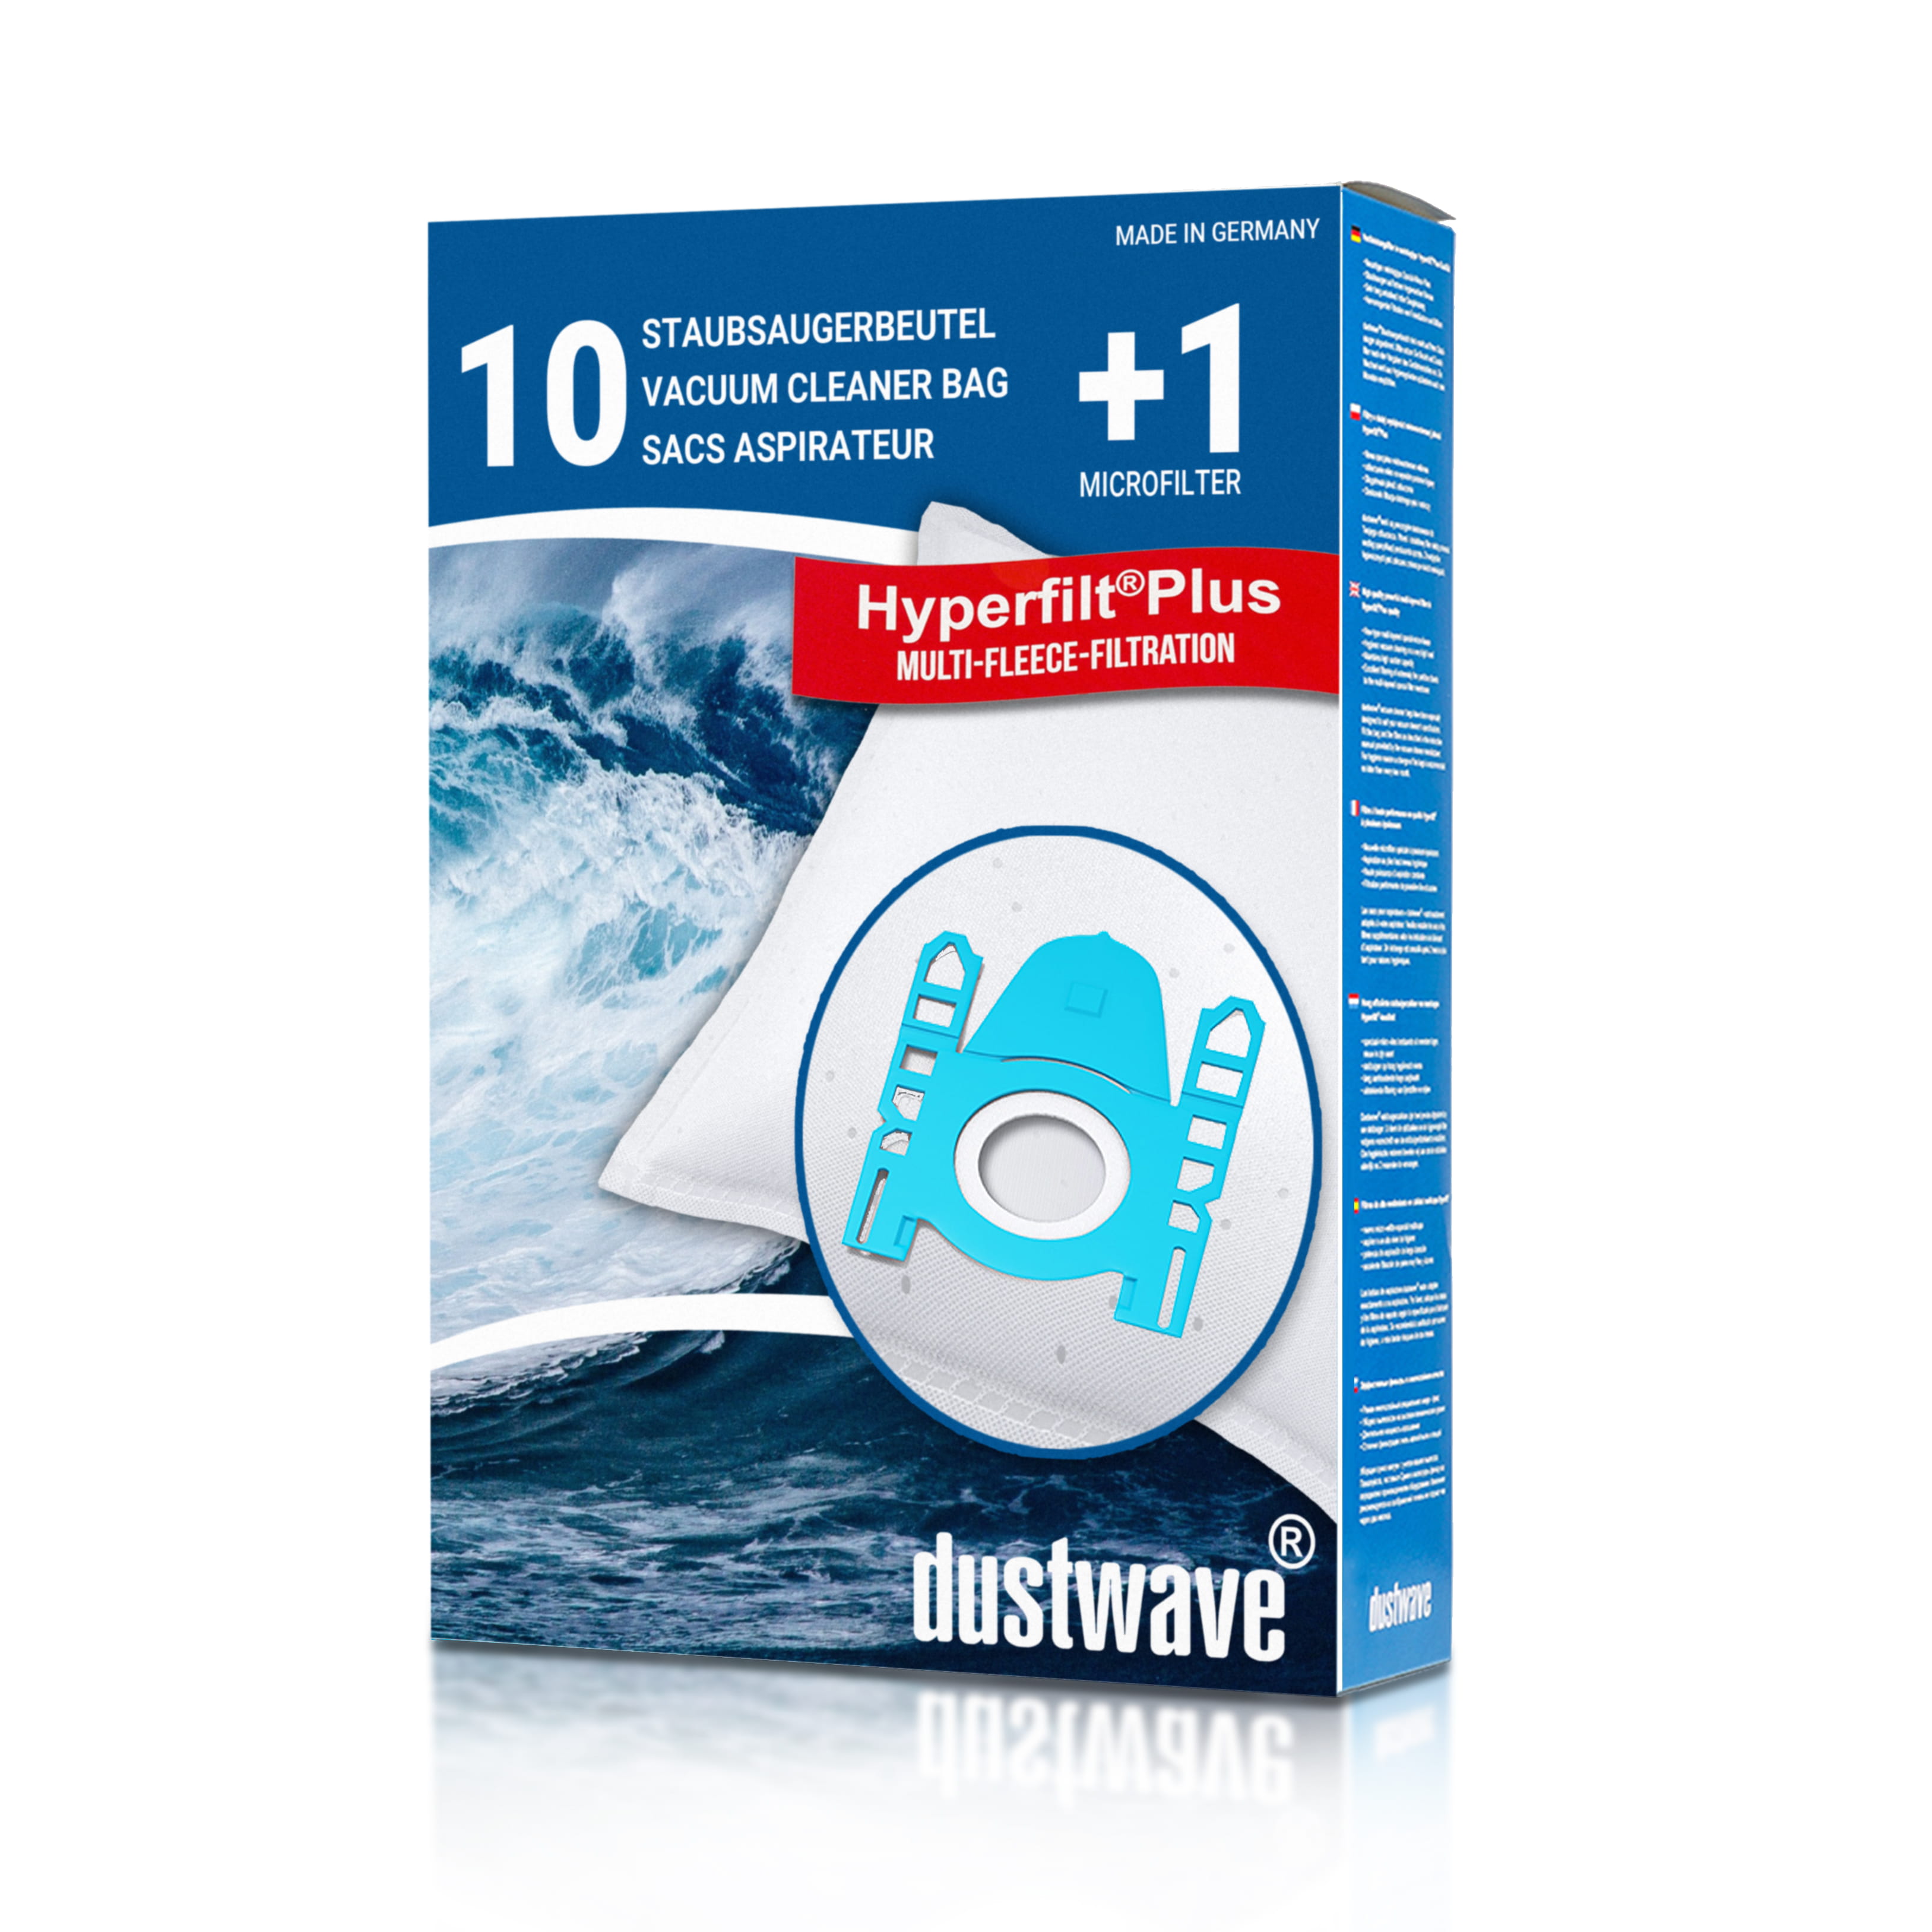 Dustwave® 10 Staubsaugerbeutel für AquaPur SIE 670 - hocheffizient, mehrlagiges Mikrovlies mit Hygieneverschluss - Made in Germany